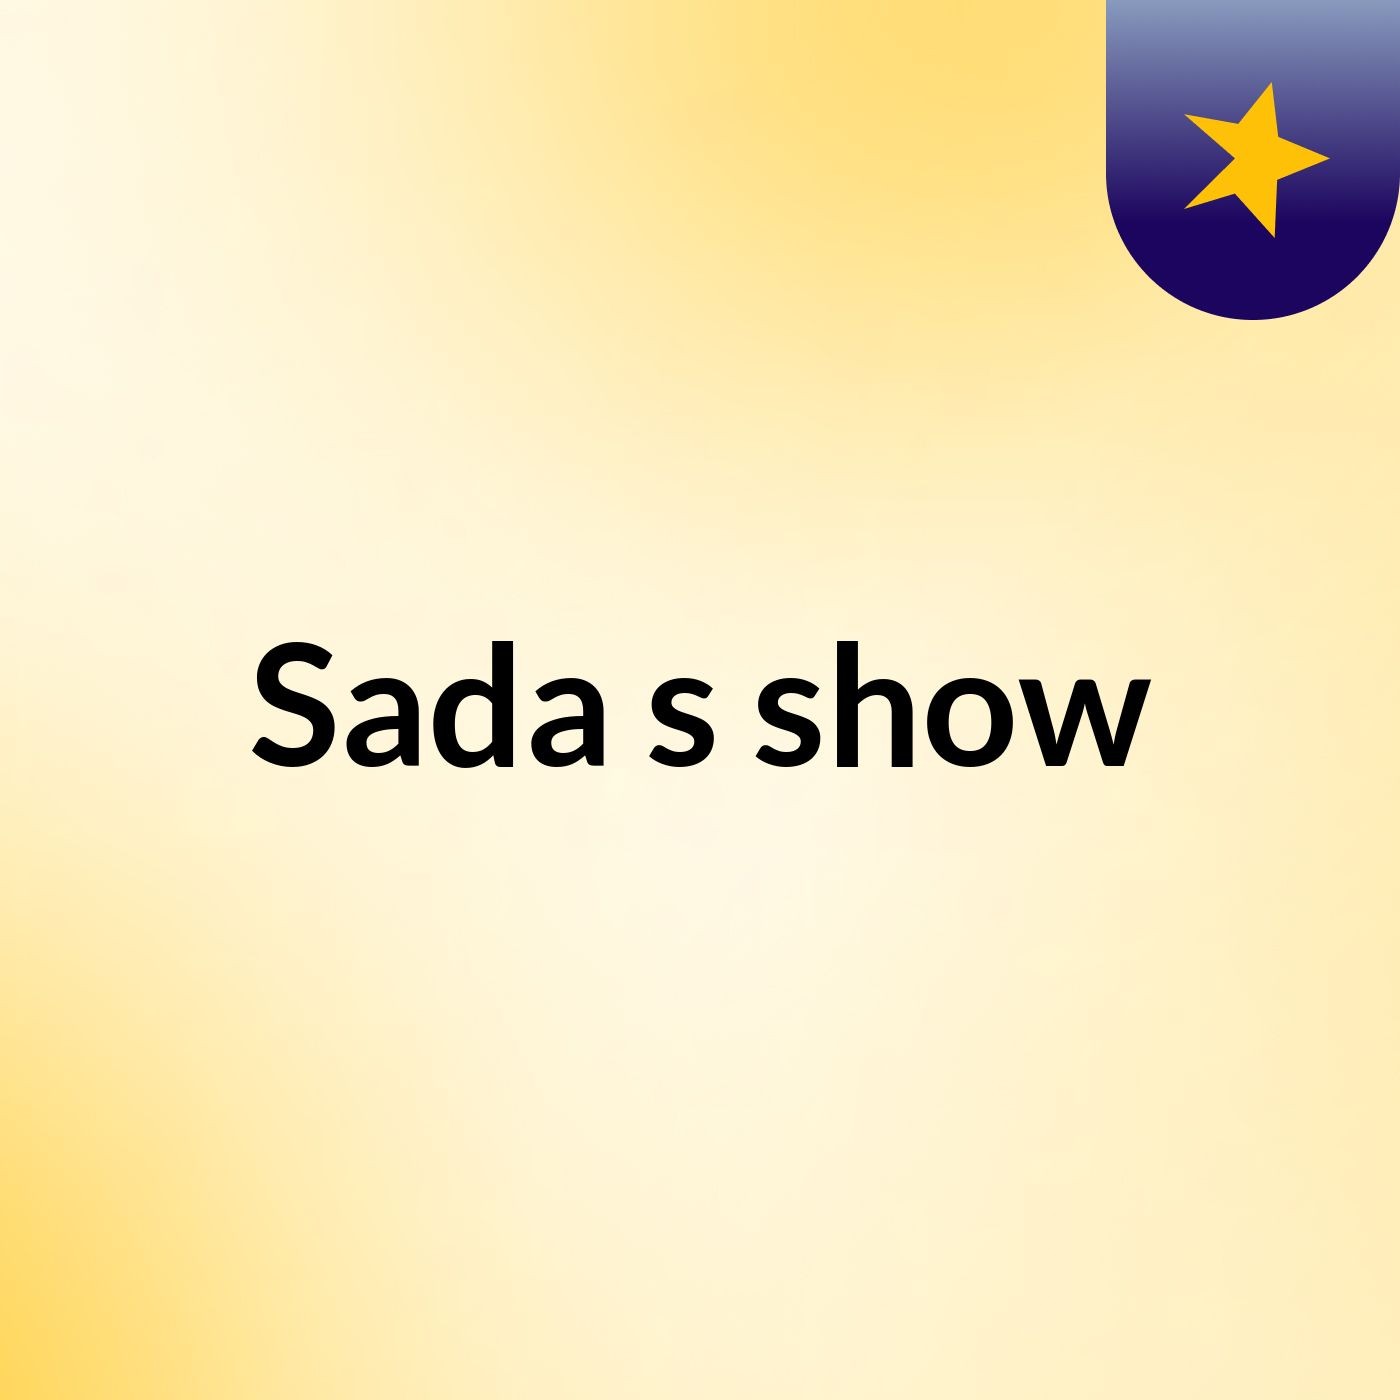 Sada's show